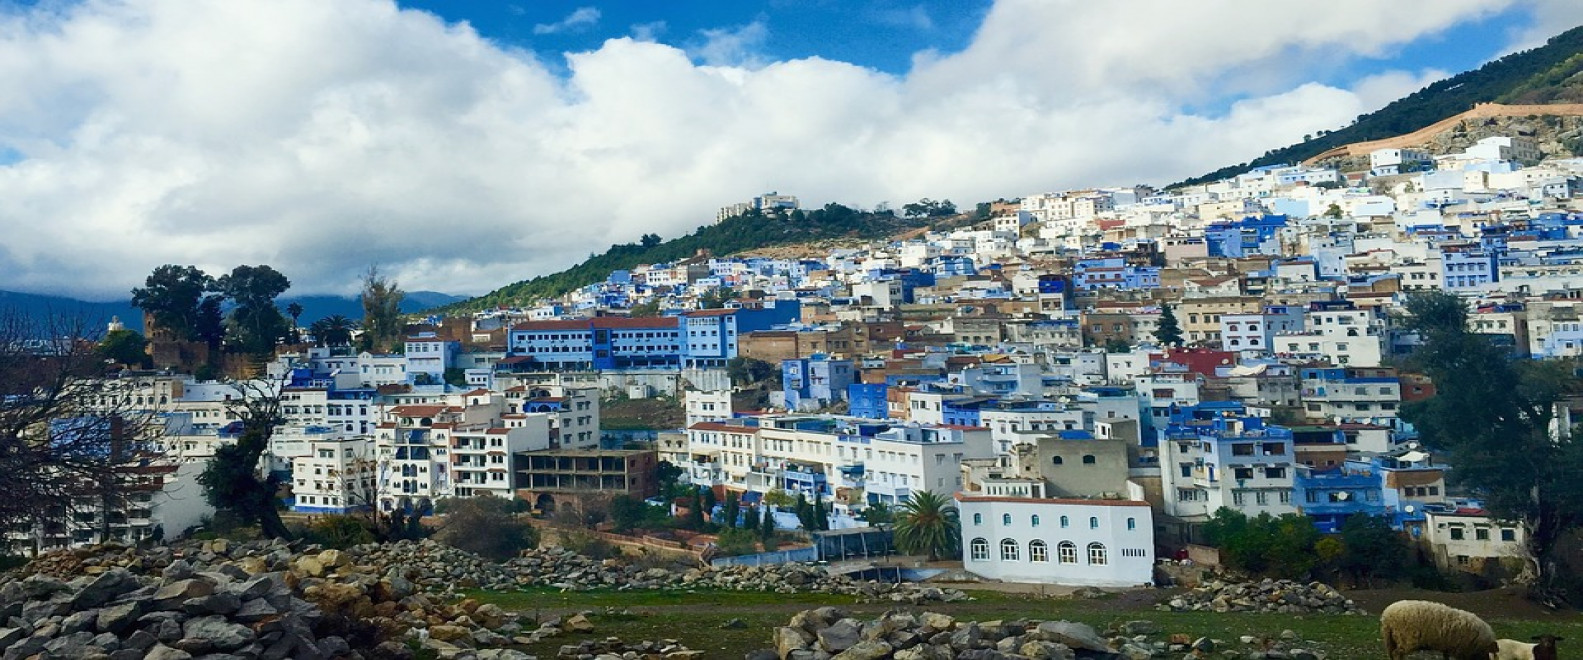 essay Belofte ironie Chefchaouen wordt beschouwd als de meest "instagrammable" stad van Marokko.  | Nationaal Marokkaanse Bureau voor Toerisme